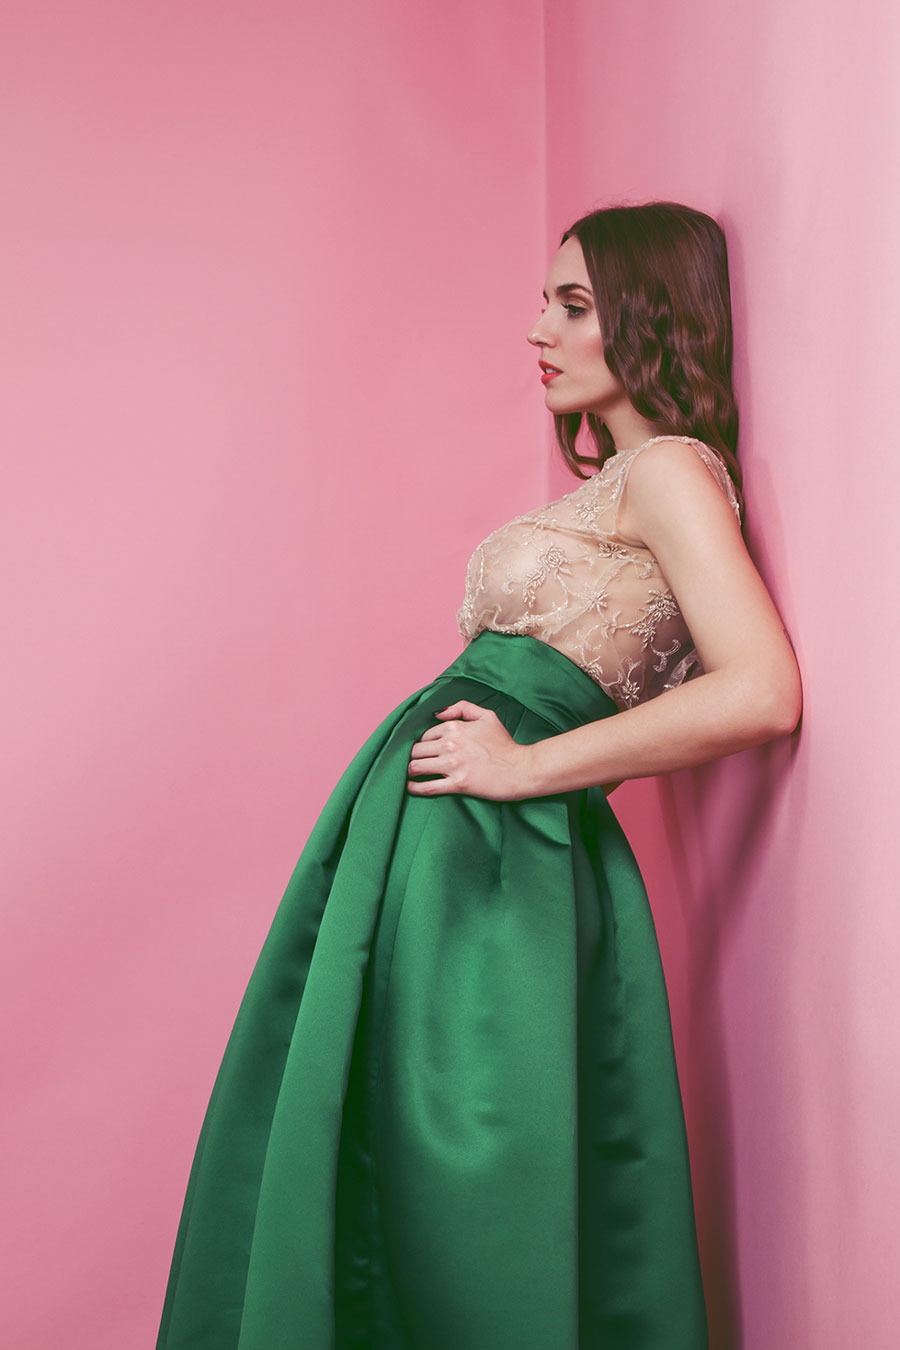 falda verde y top transparente jorge de la rosa